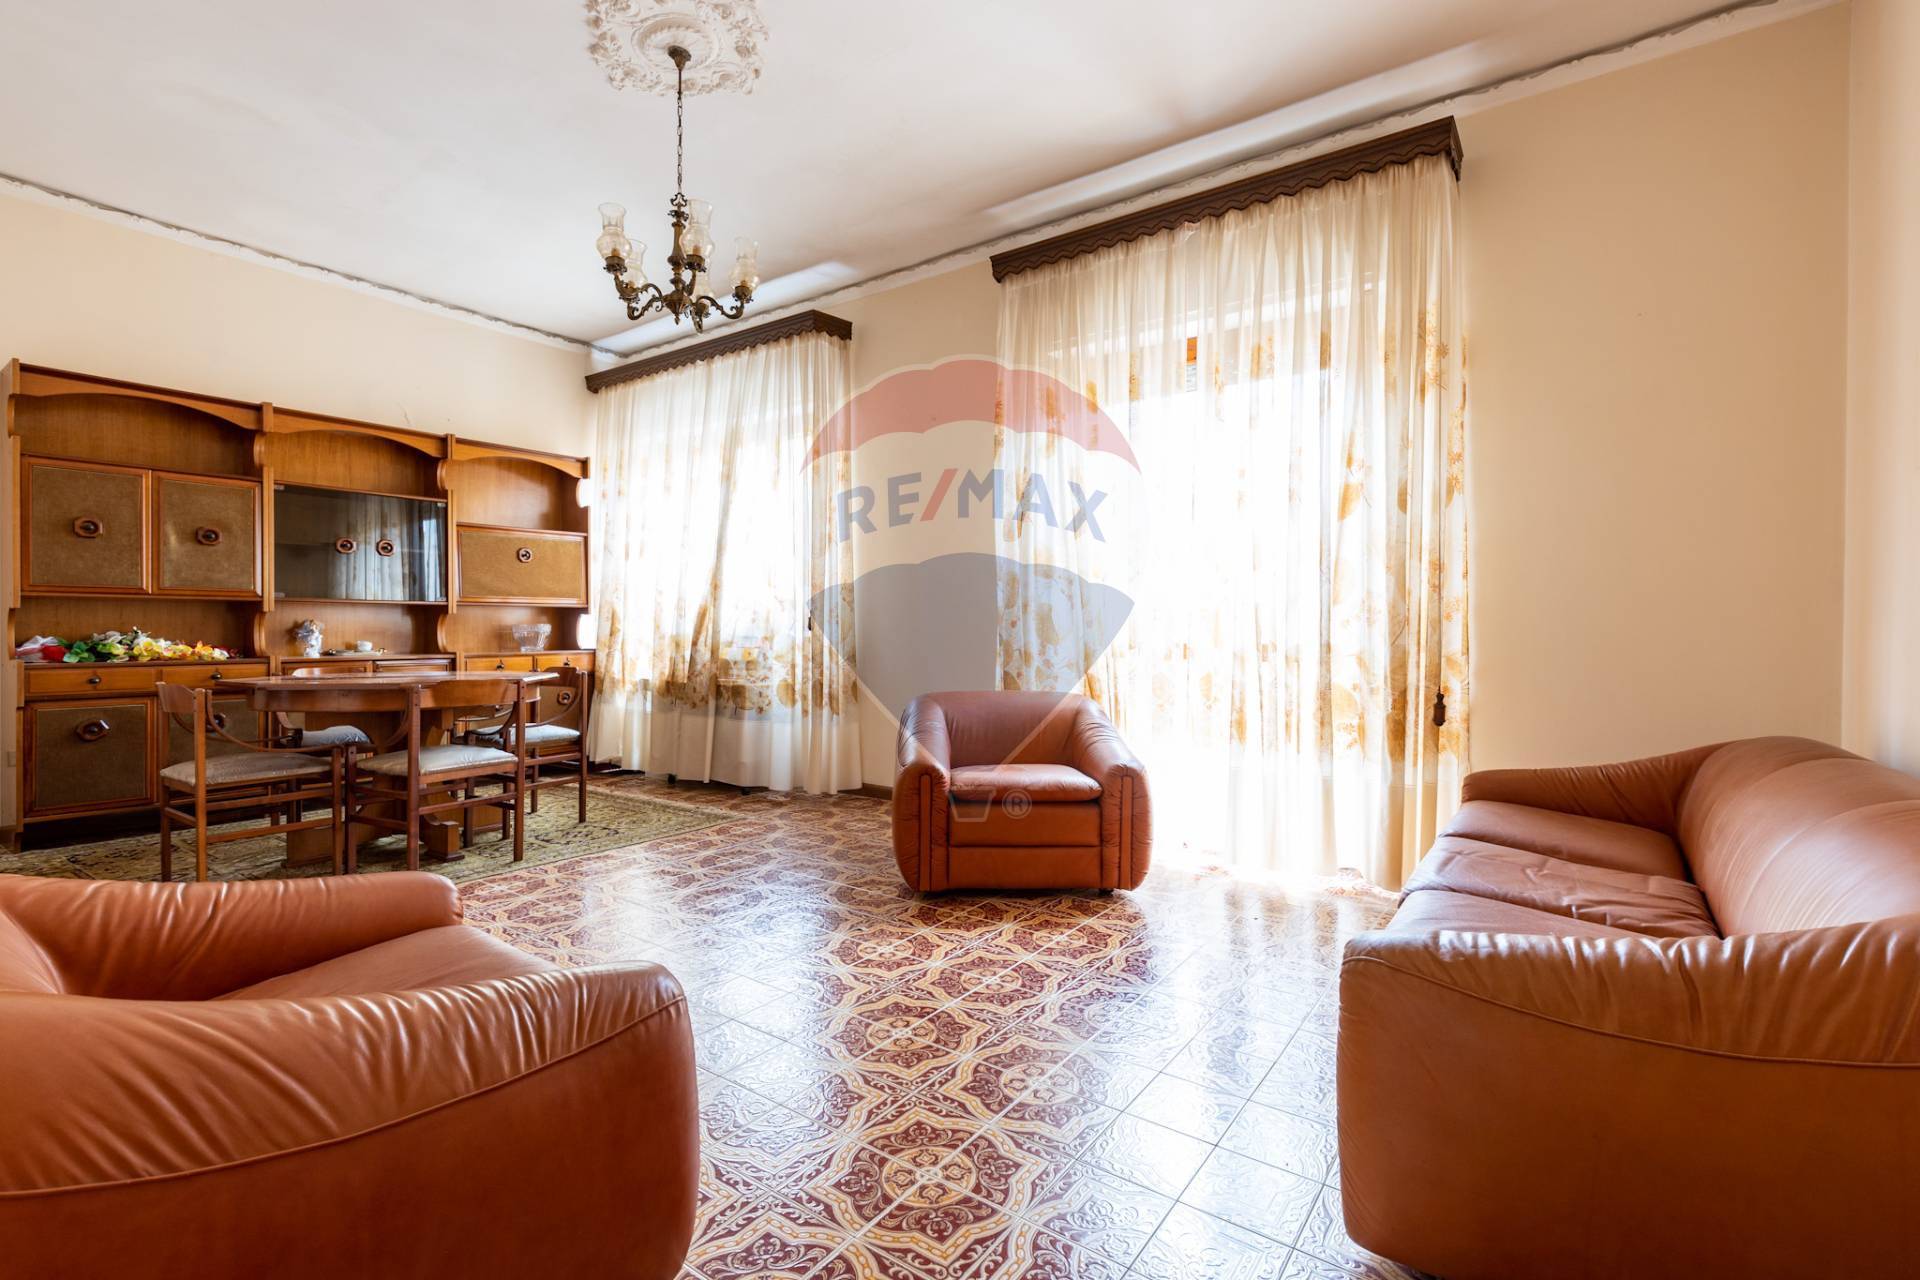 Appartamento in vendita a Quartu Sant'Elena, 6 locali, zona Località: ZonaMusicistiItaliani, prezzo € 165.000 | PortaleAgenzieImmobiliari.it